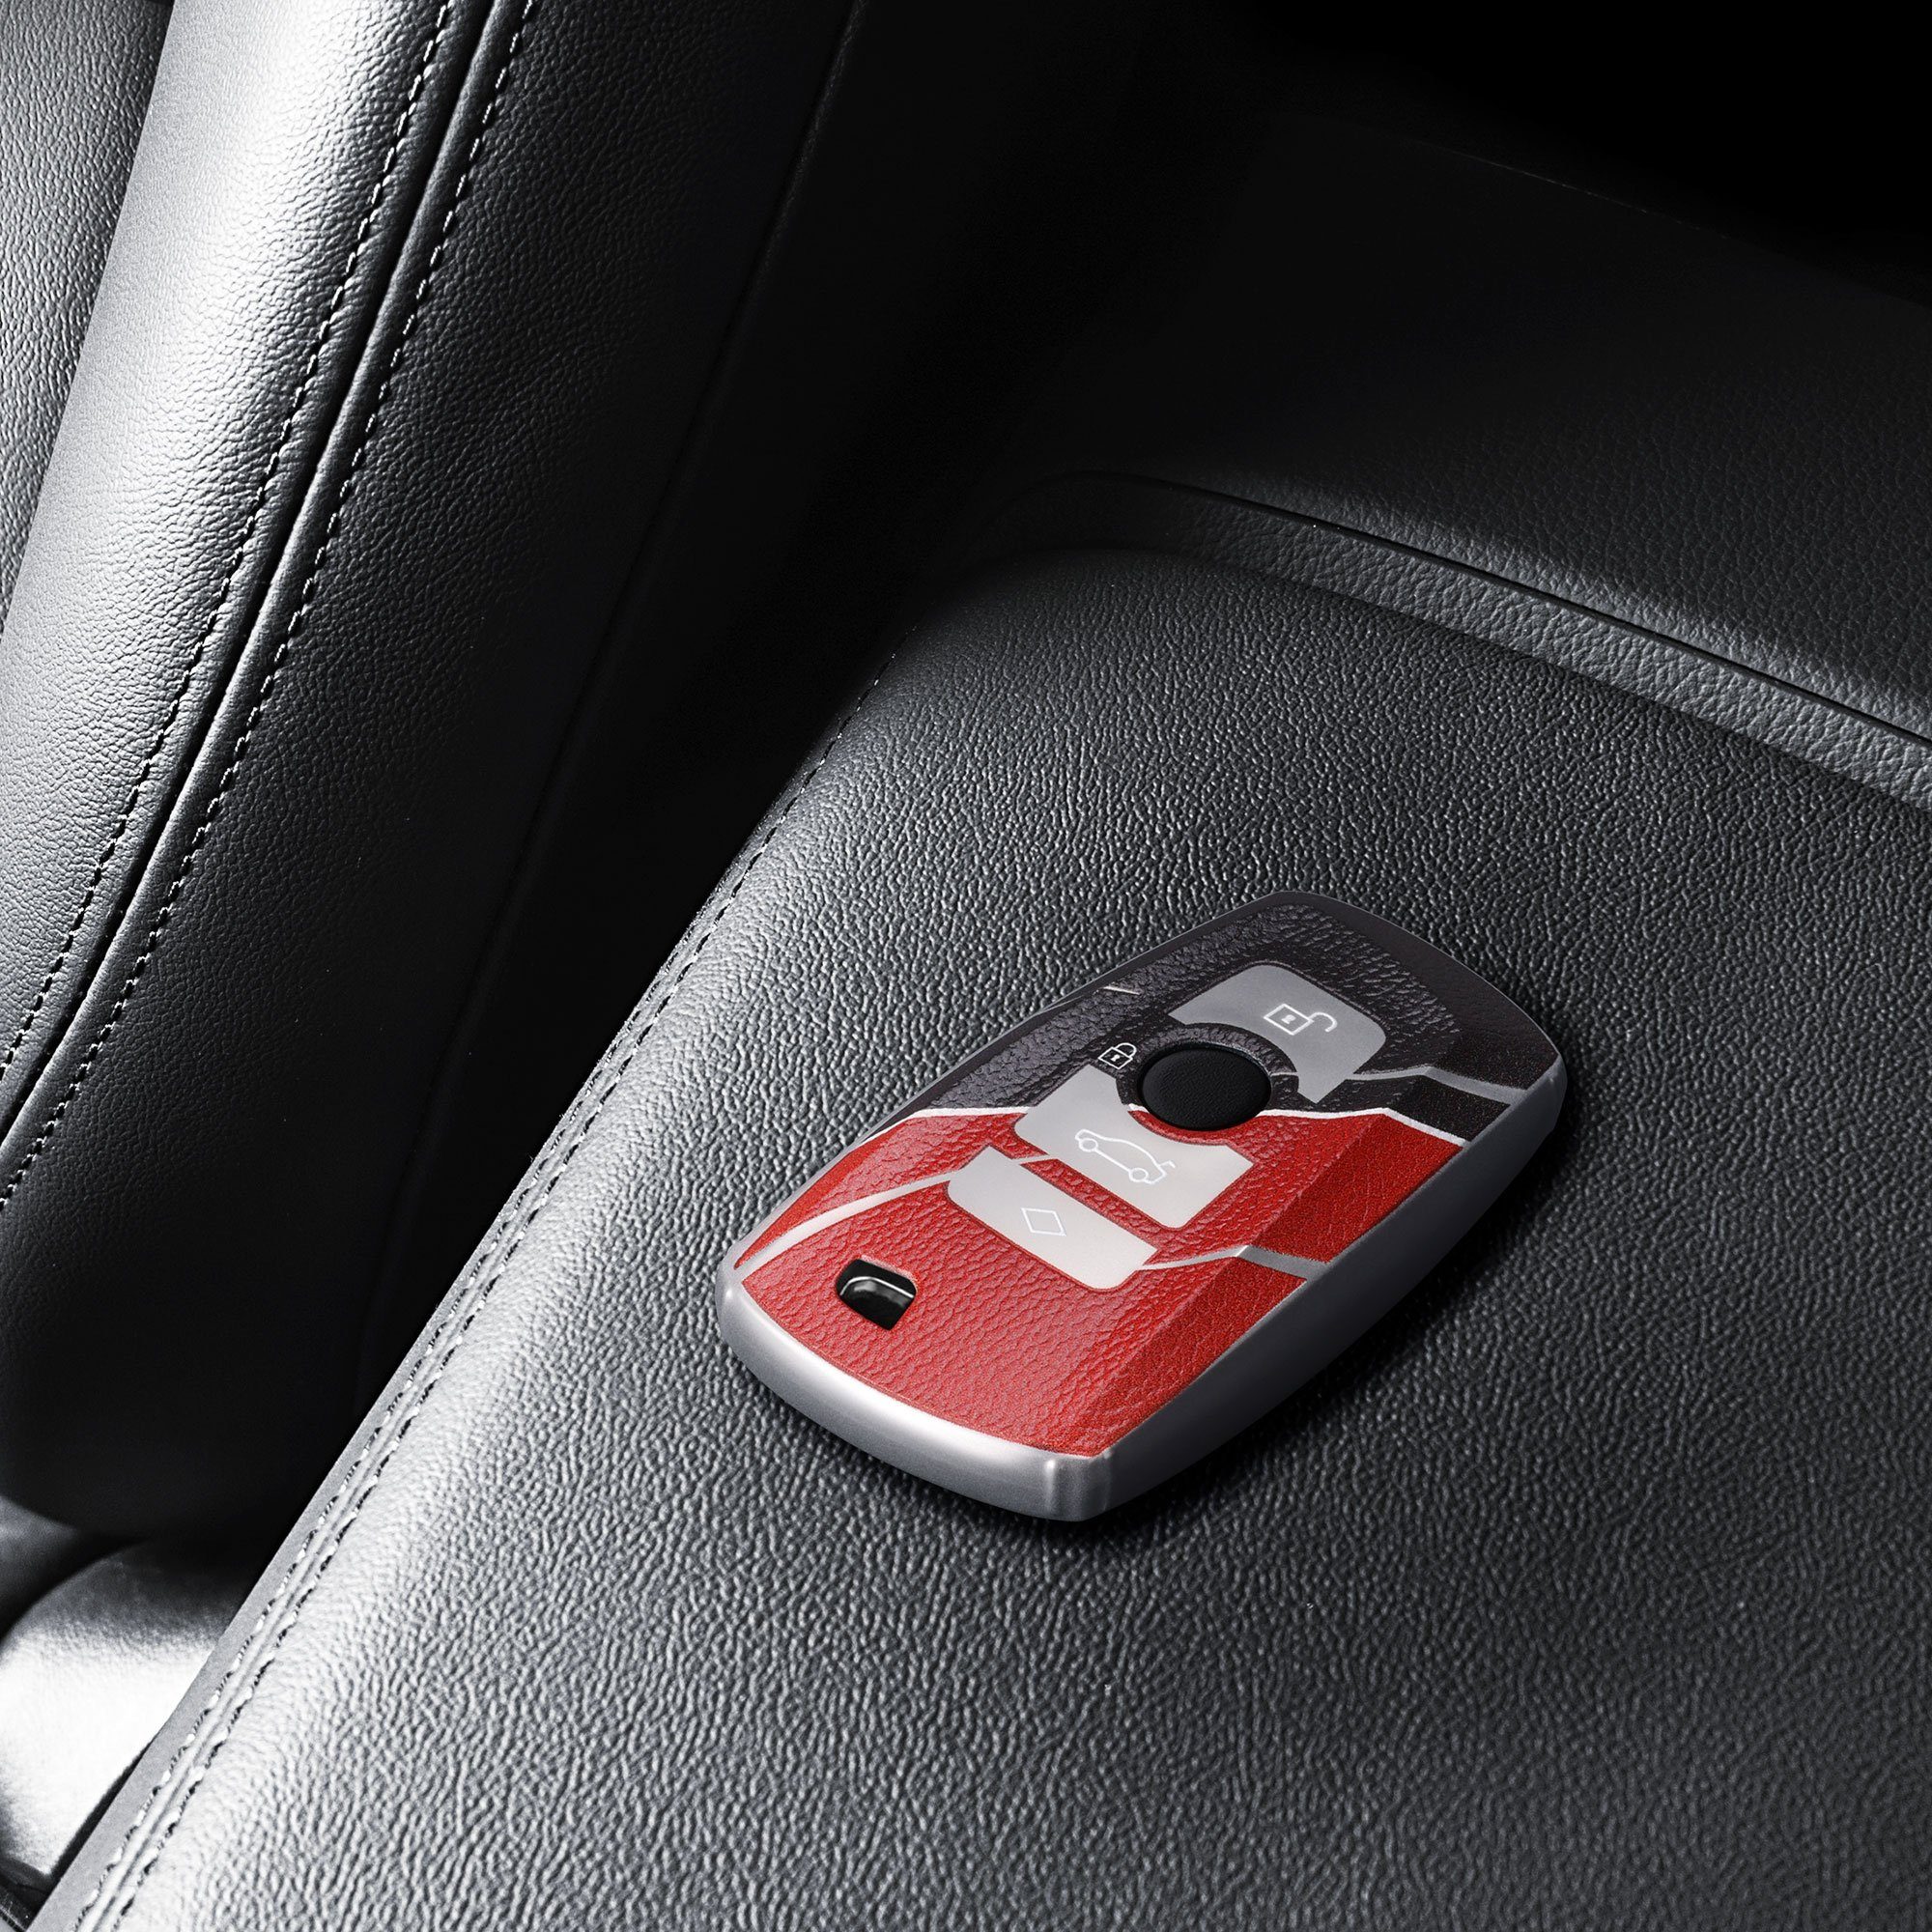 für BMW, TPU Grau Autoschlüssel für Hülle Schlüsselhülle Schlüsseltasche BMW kwmobile Cover Schutzhülle